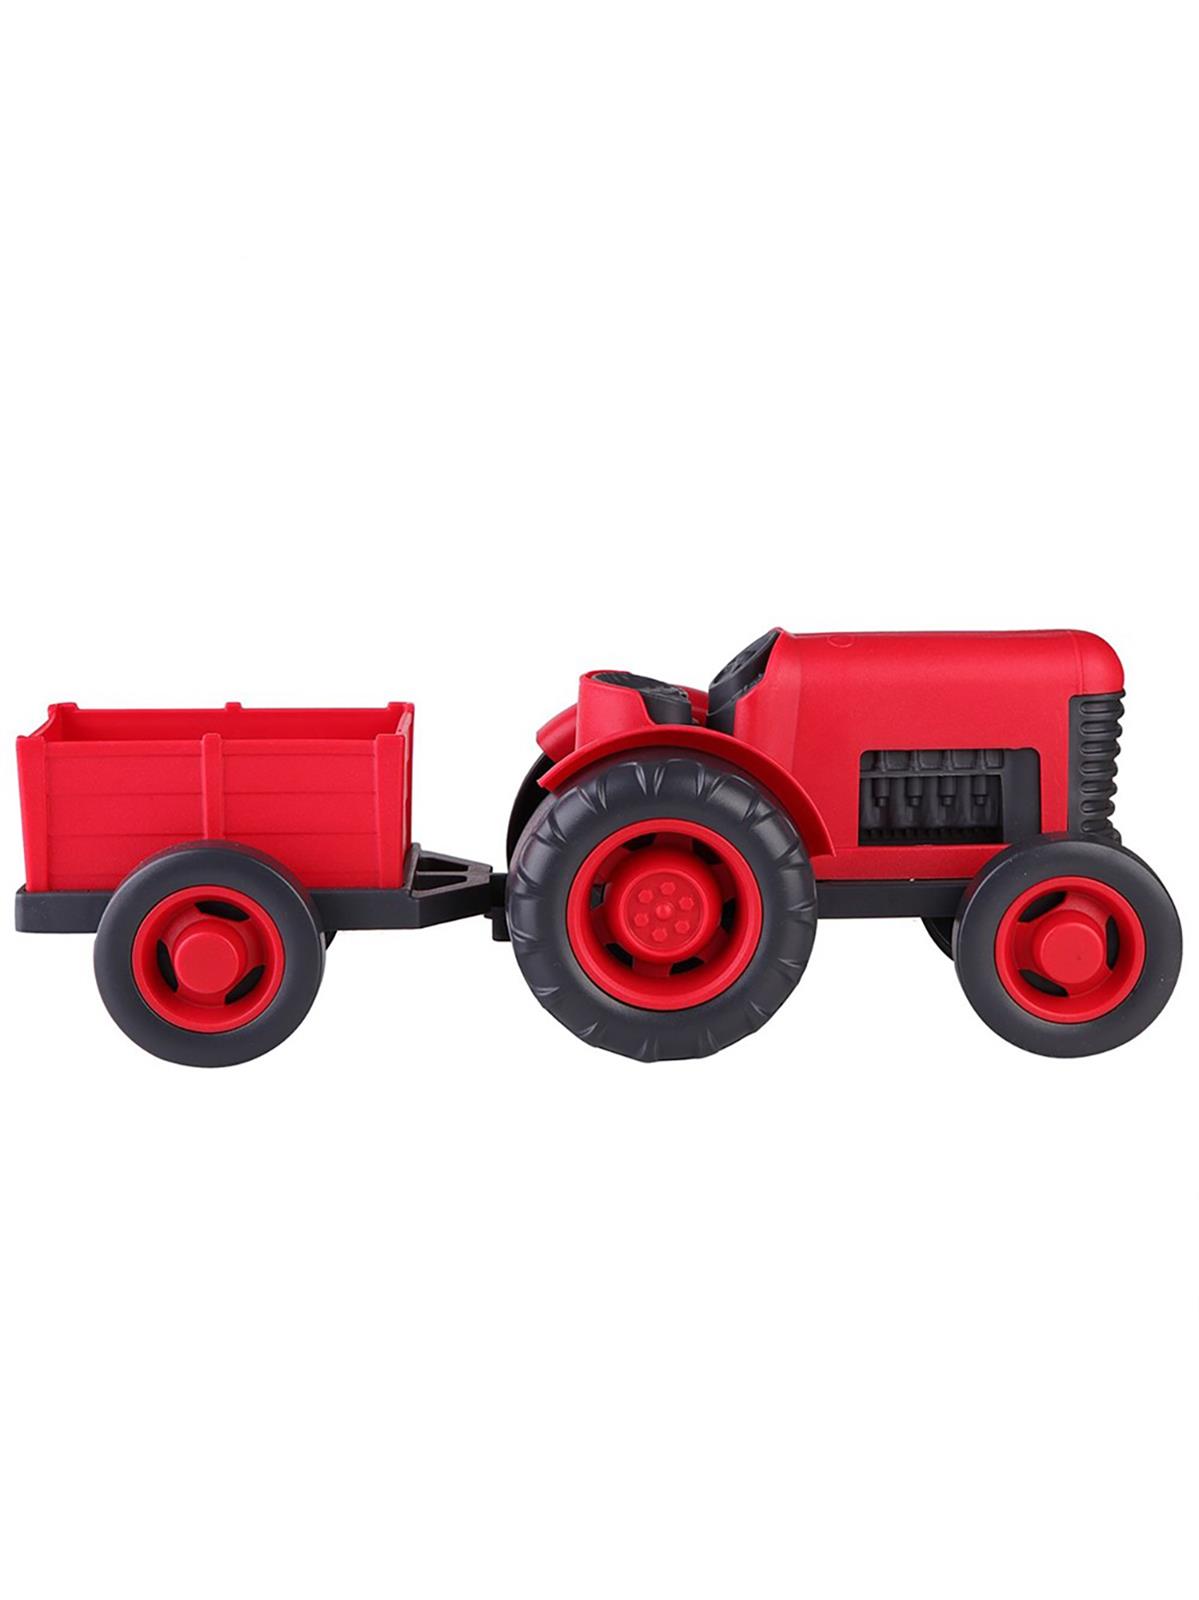 Let's Be Child Römorlu Traktör Kırmızı